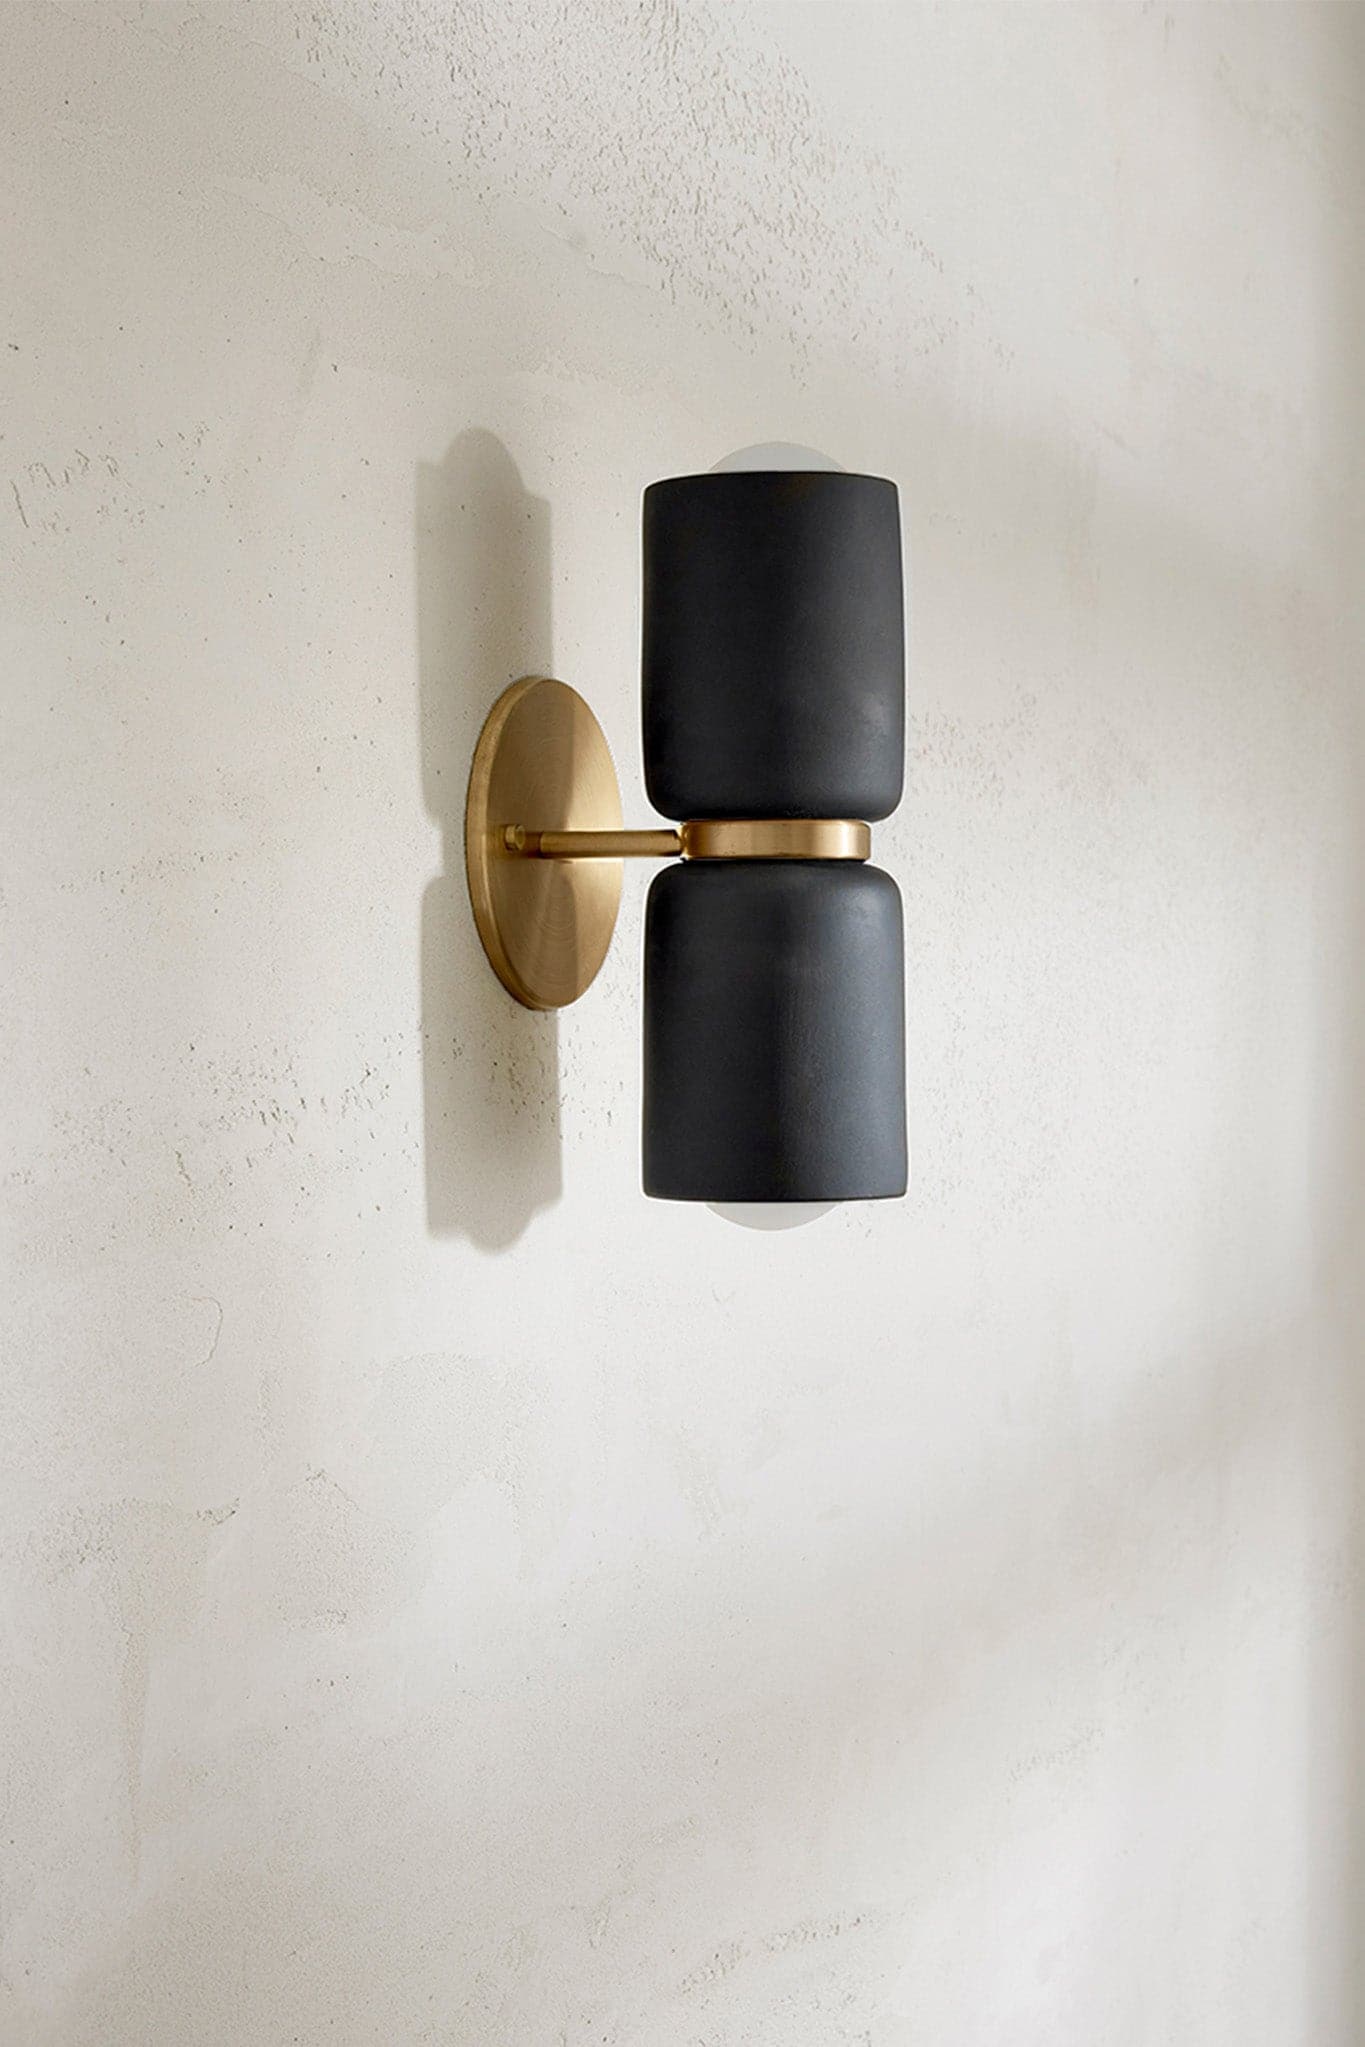 Marz Designs Terra 2 Wall Light in Brass/Slate